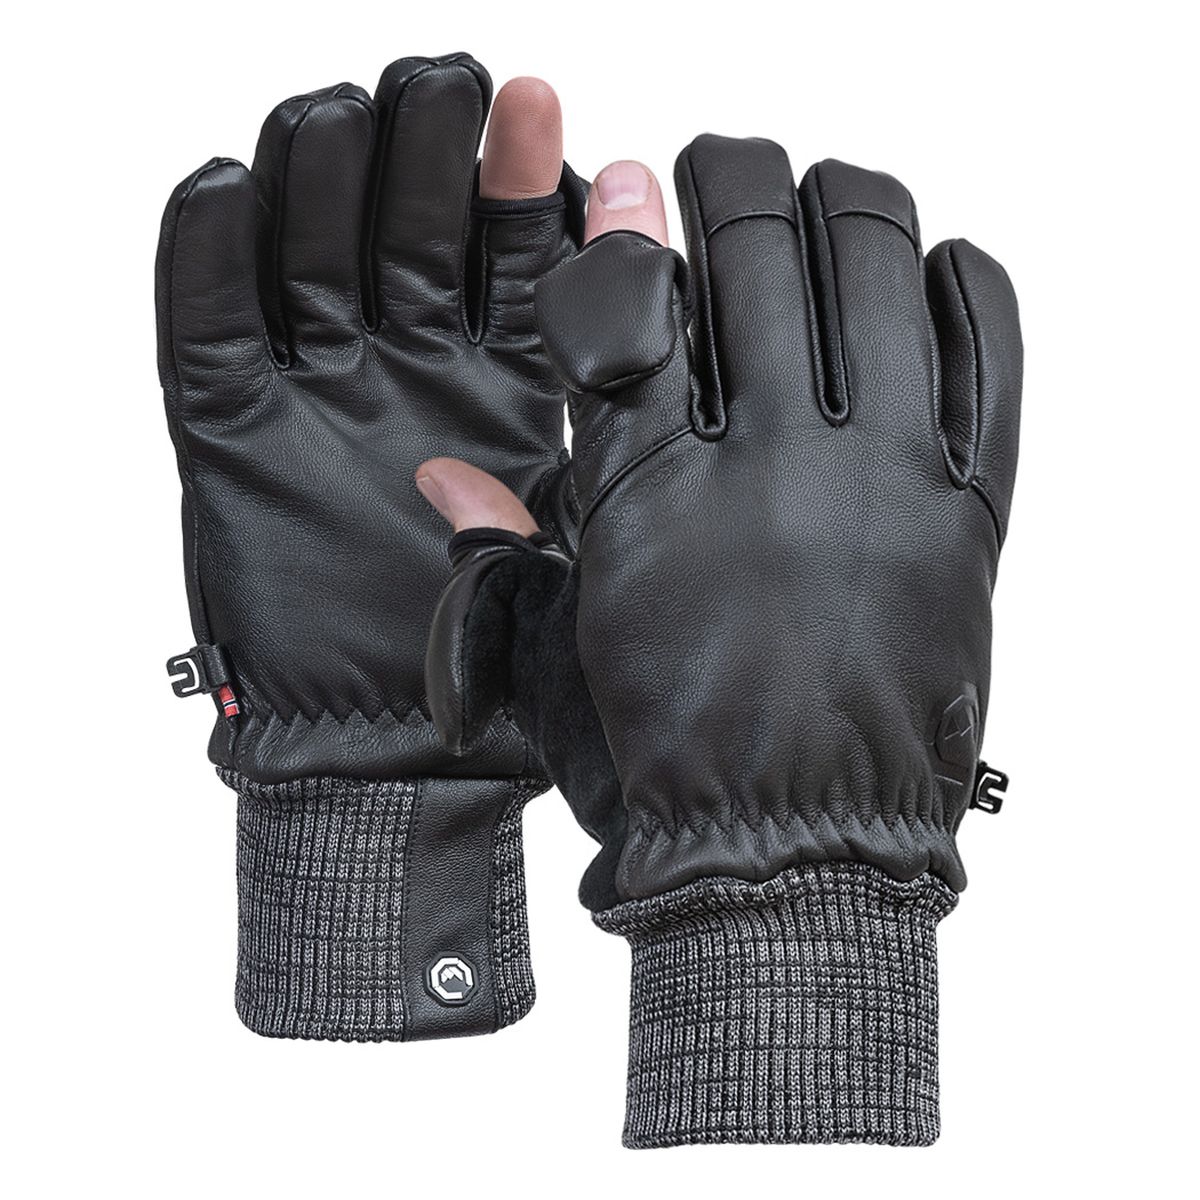 Vallerret Hatchet Leather Glove Black, Leder-Fotohandschuhe S Schwarz